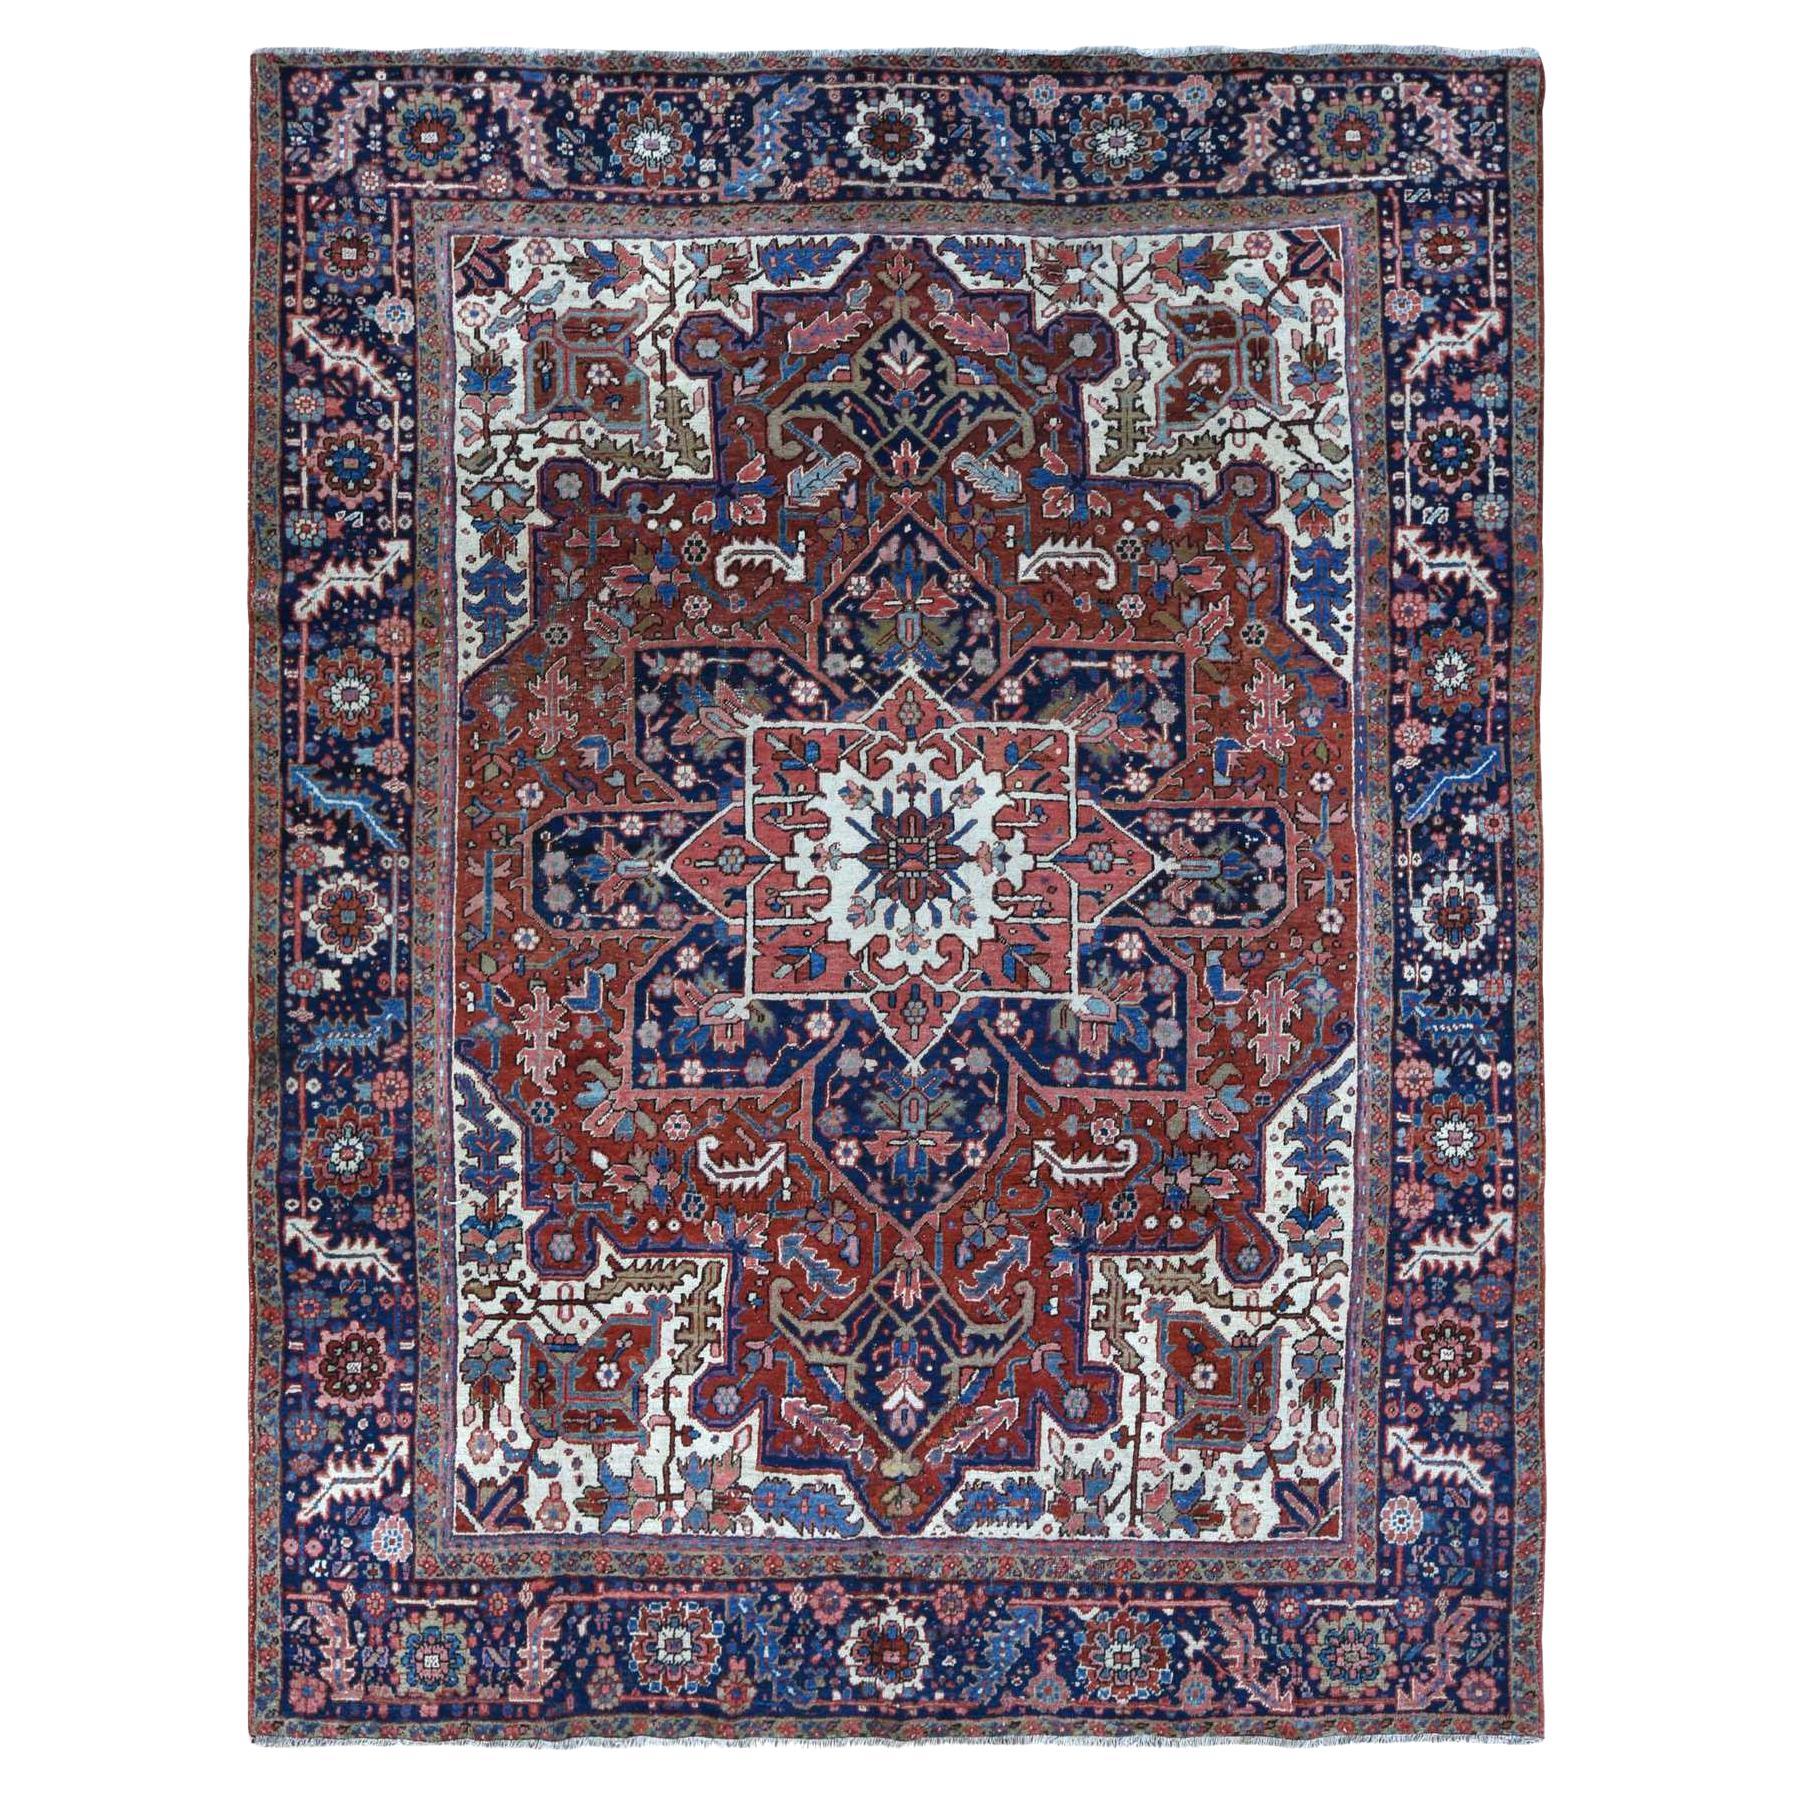 Roter antiker persischer Heriz-Teppich aus reiner Wolle, handgeknüpft, sauber, 9'1"x11'6"